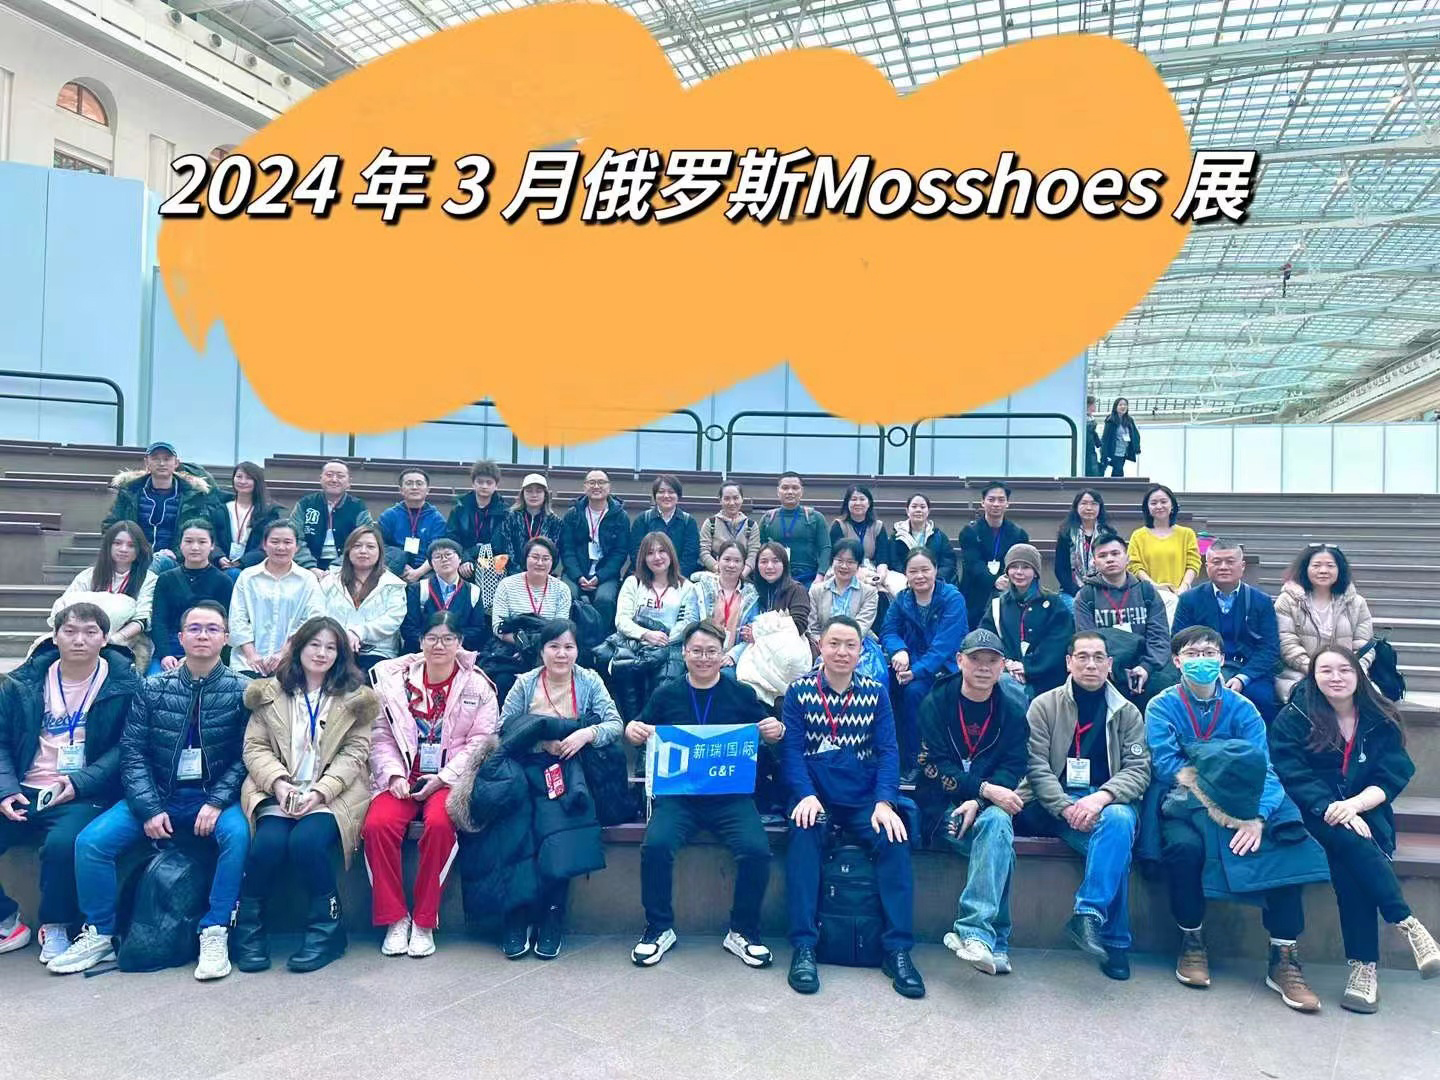 La exposición rusa MOSSSHOES será un evento innovador y los organizadores esperan recibir pedidos completos de los entusiastas participantes.